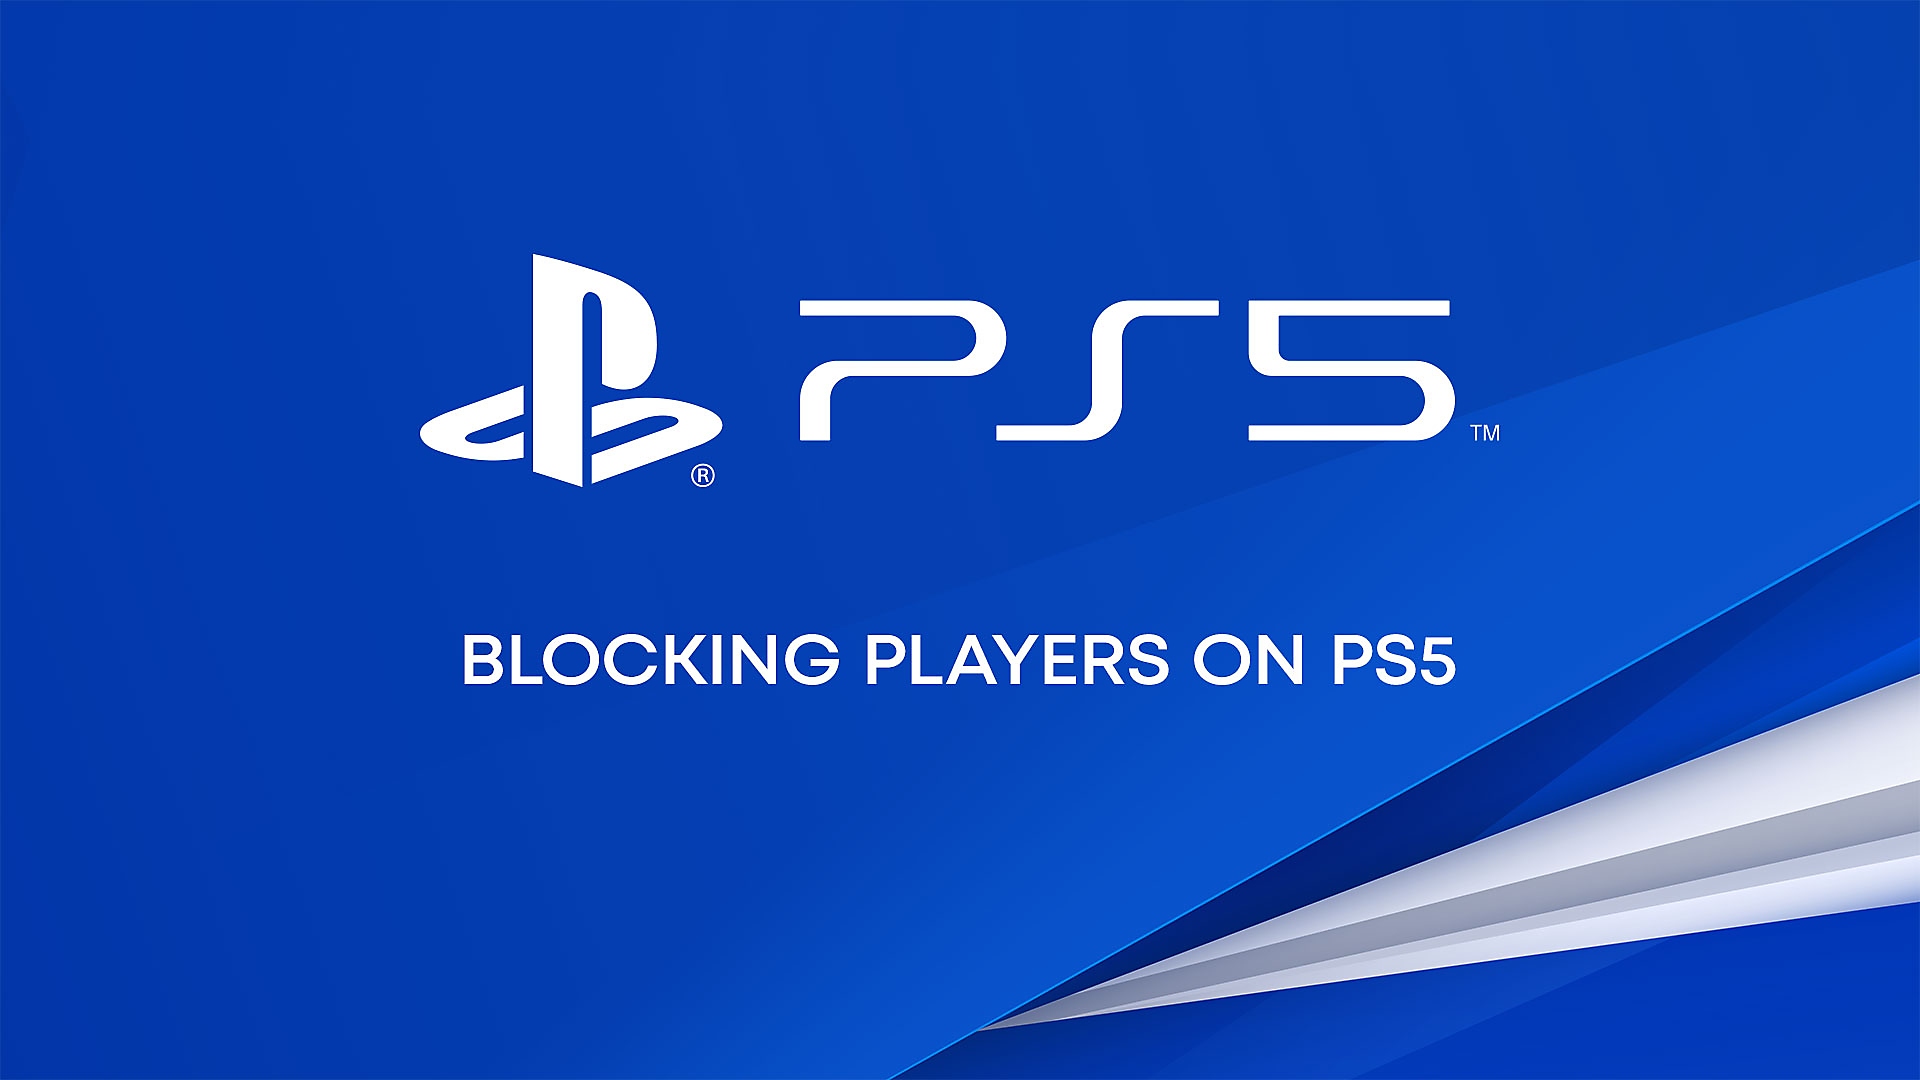 PS5本体でプレーヤーをブロックする方法についてのYouTube動画